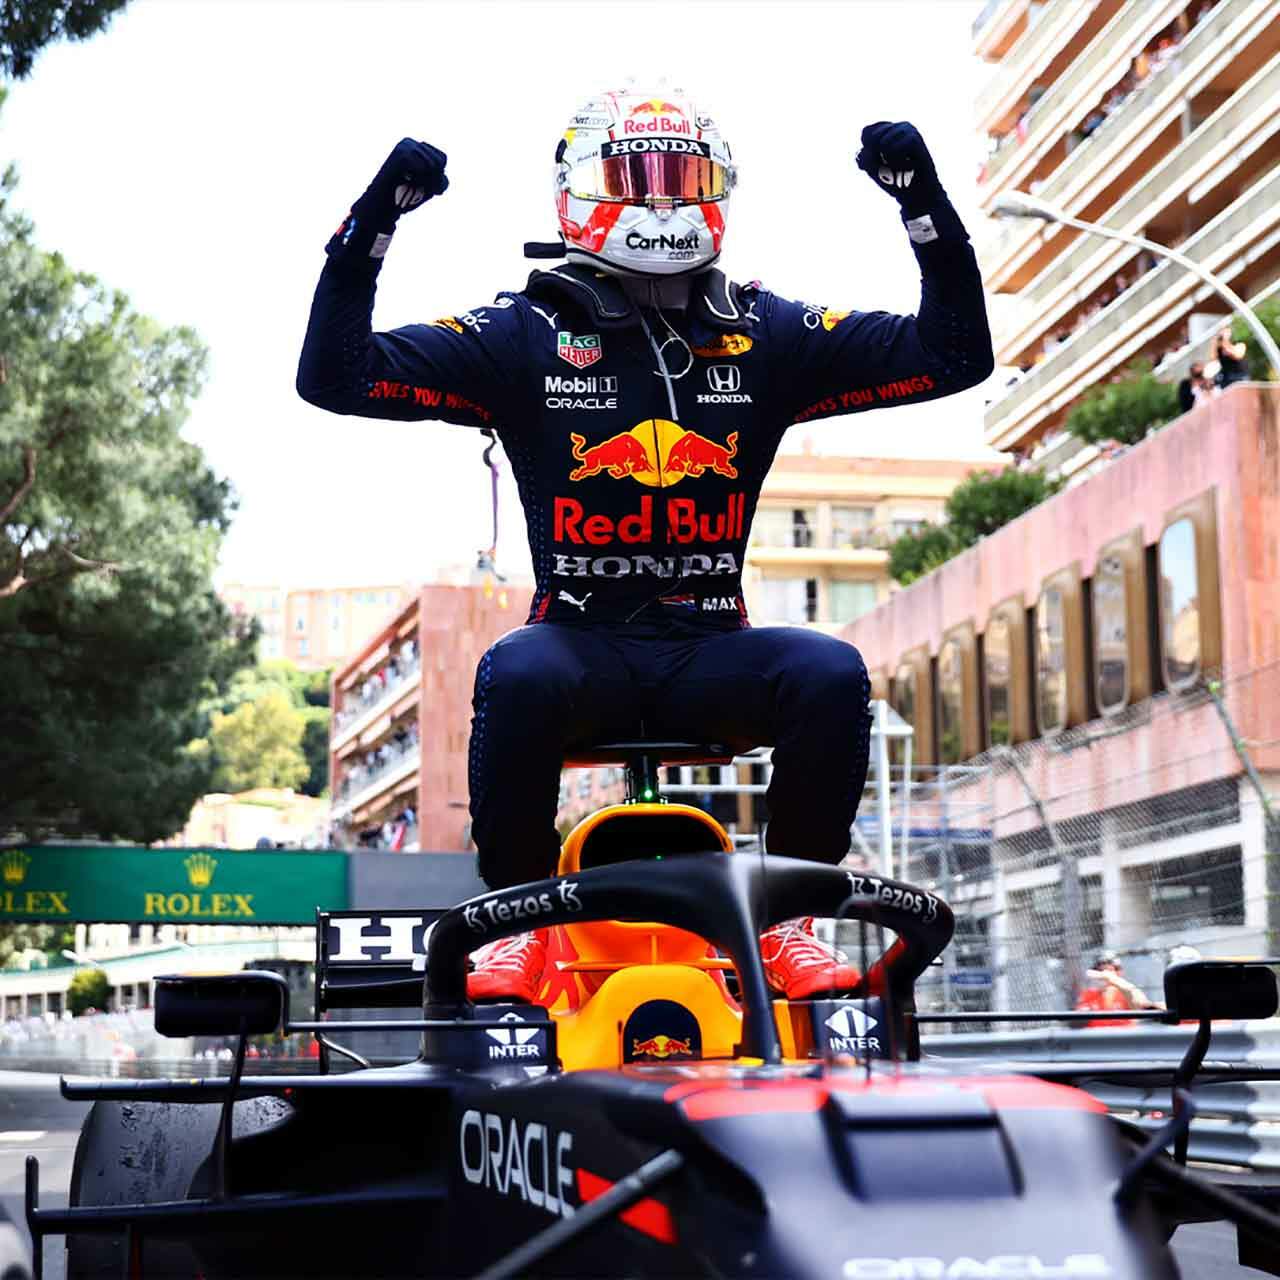 [Max Verstappen comemora vitória no Grande Prêmio de Mônaco neste domingo, 23 de maio]